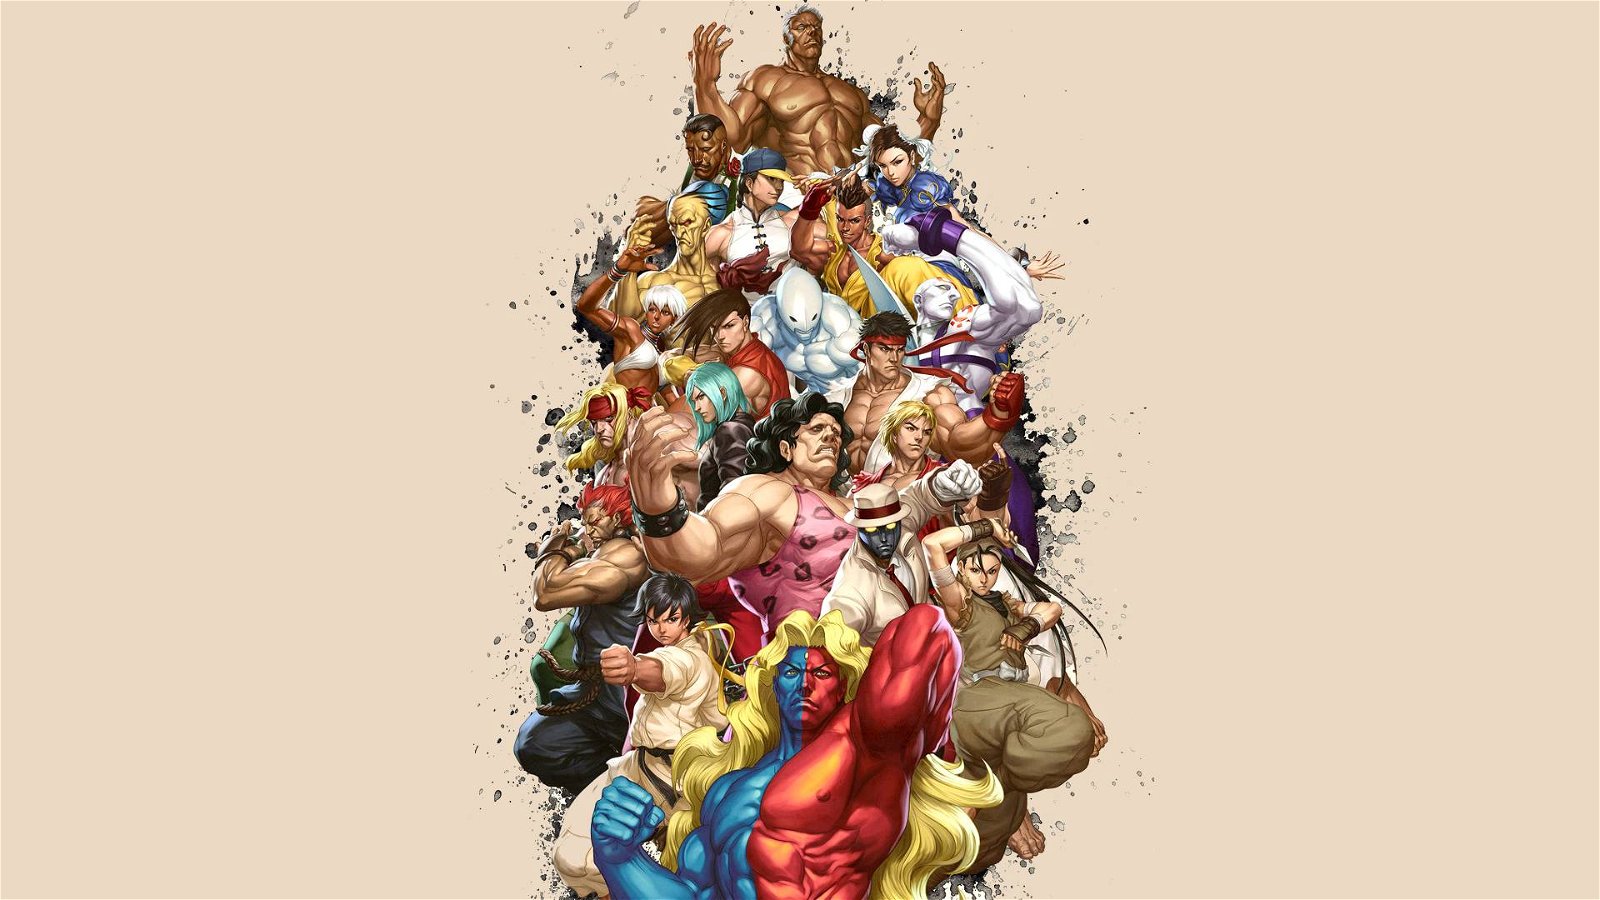 Immagine di Svelato un video esclusivo del più grande momento nella storia di Street Fighter, dopo 15 anni